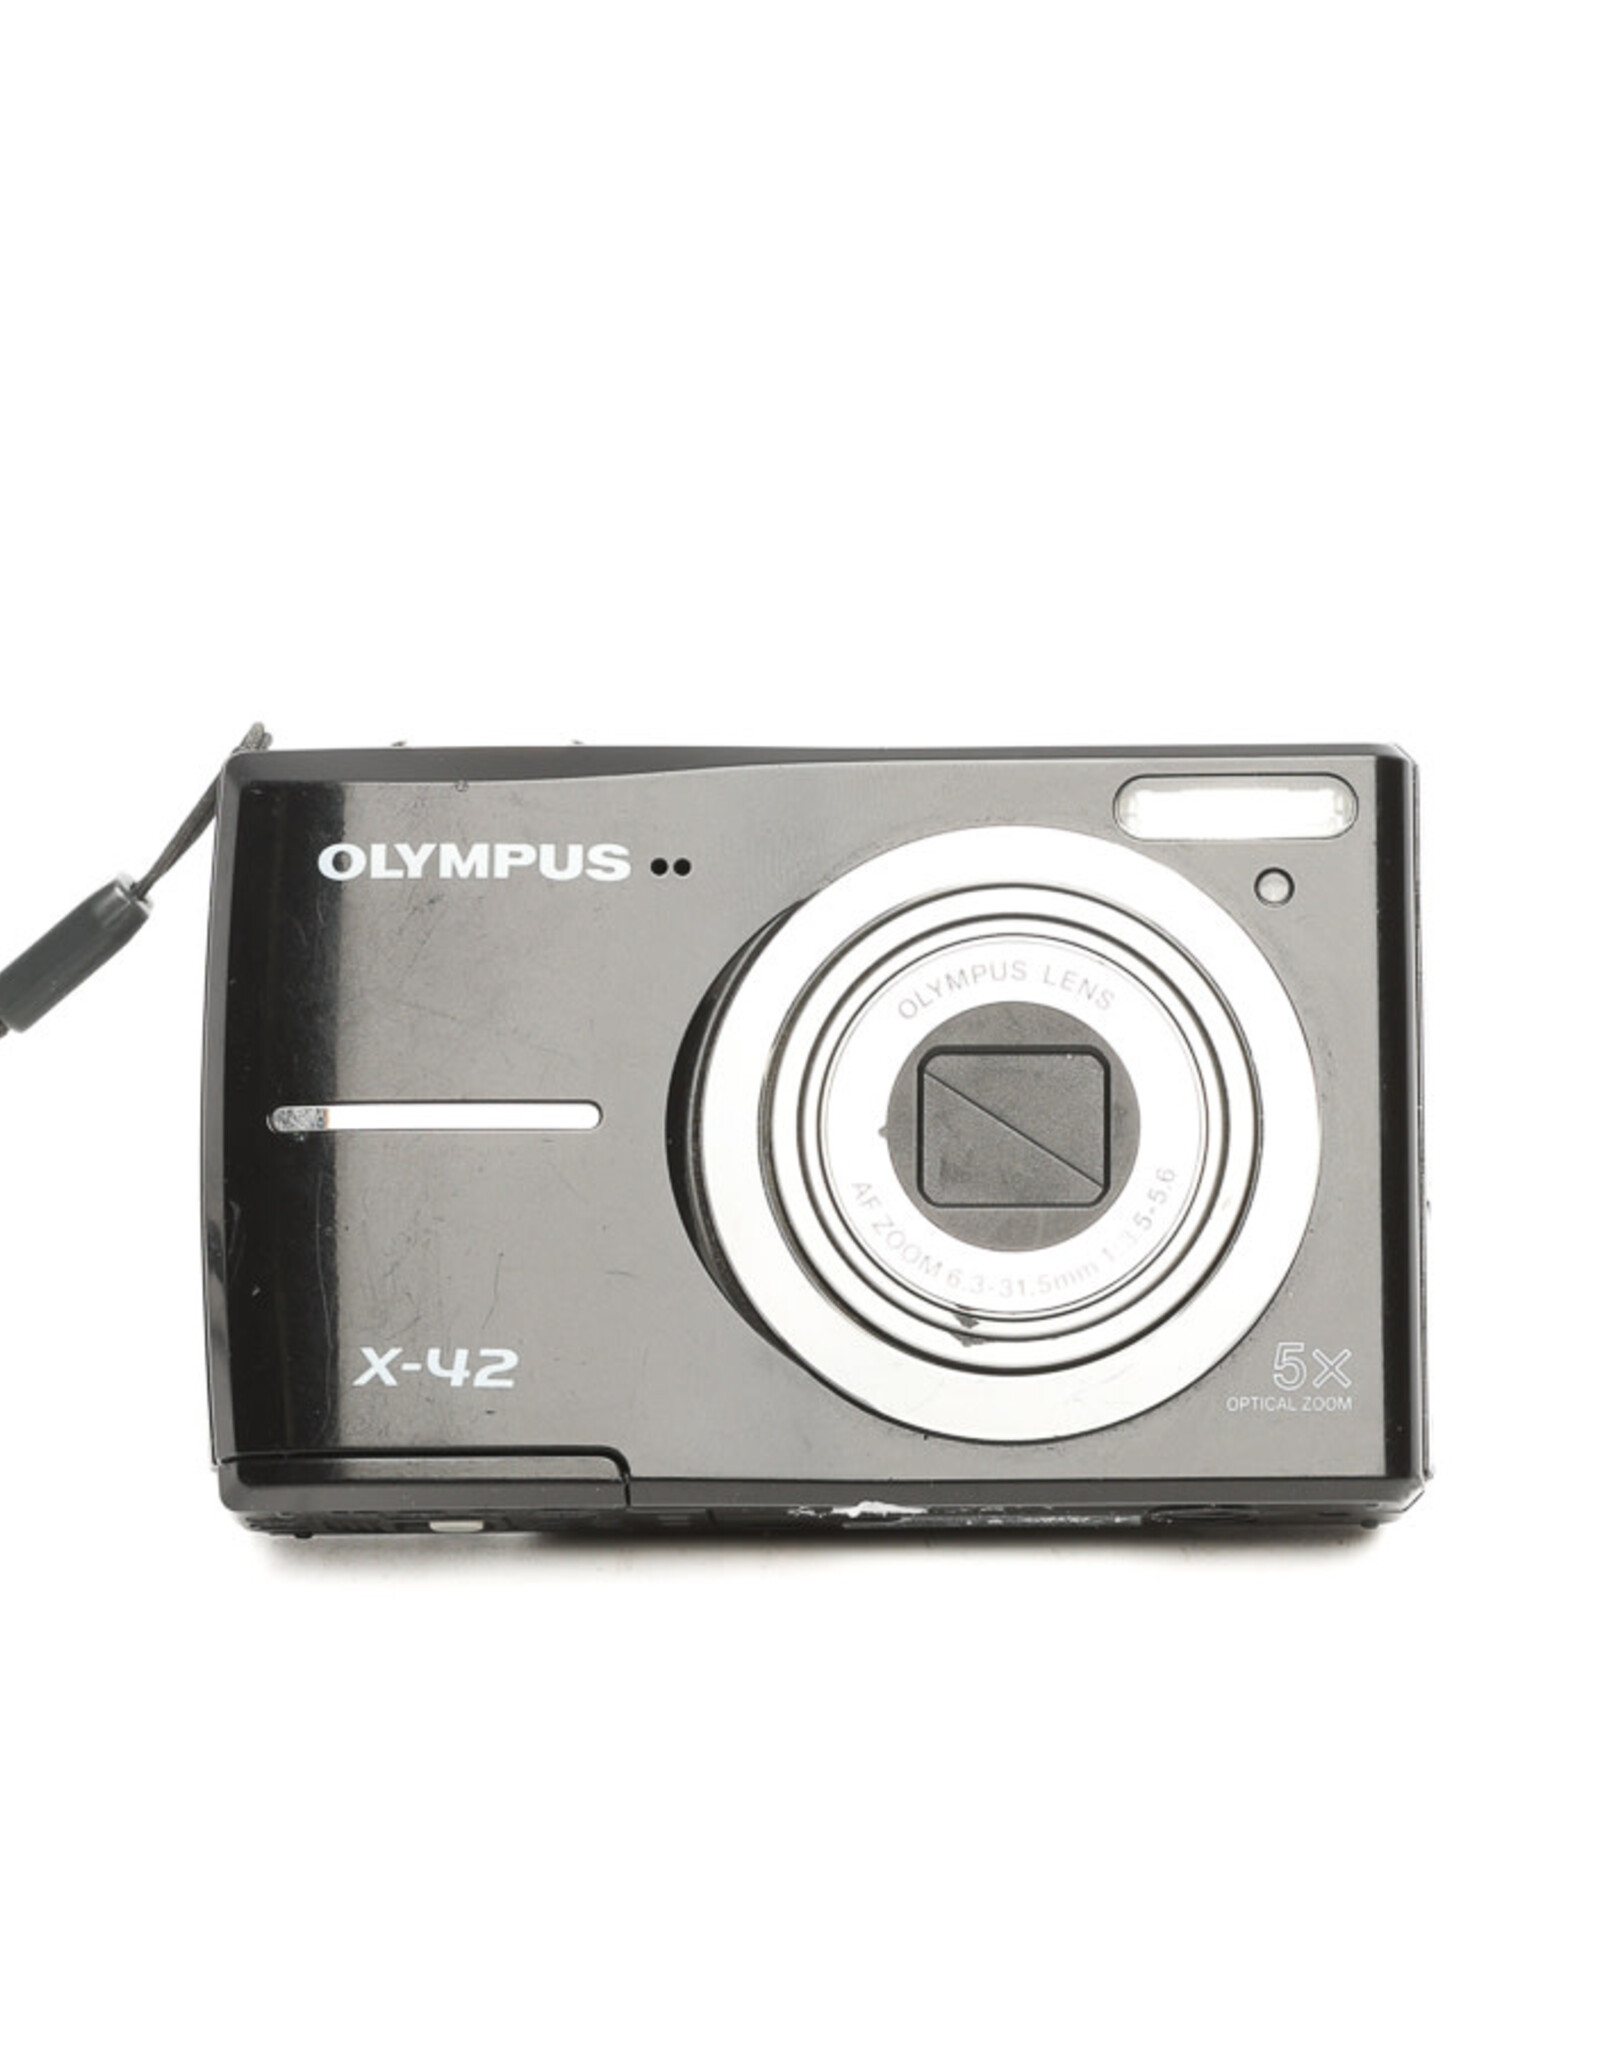 Olympus Olympus X-42 Digital Point & Shoot Camera